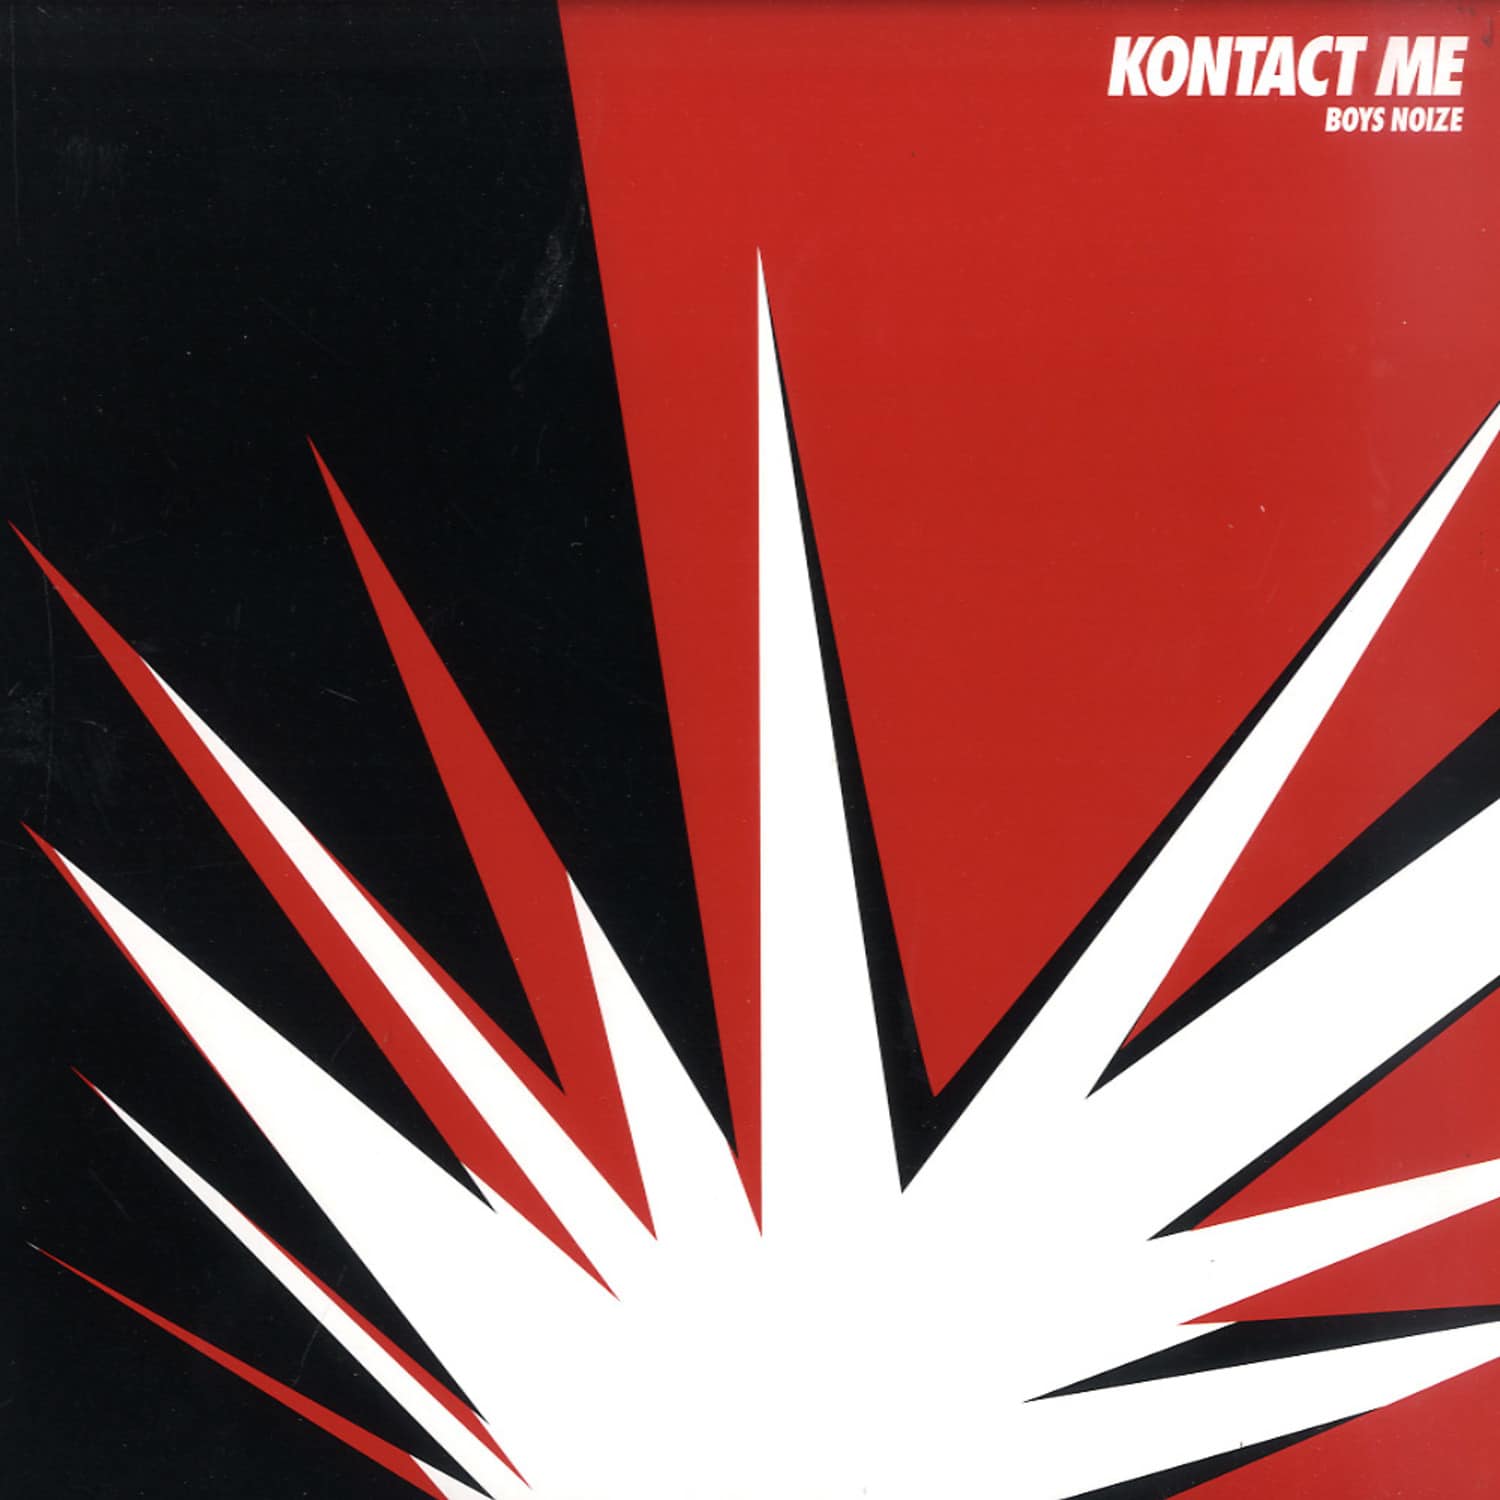 Boys Noize - KONTACT ME 